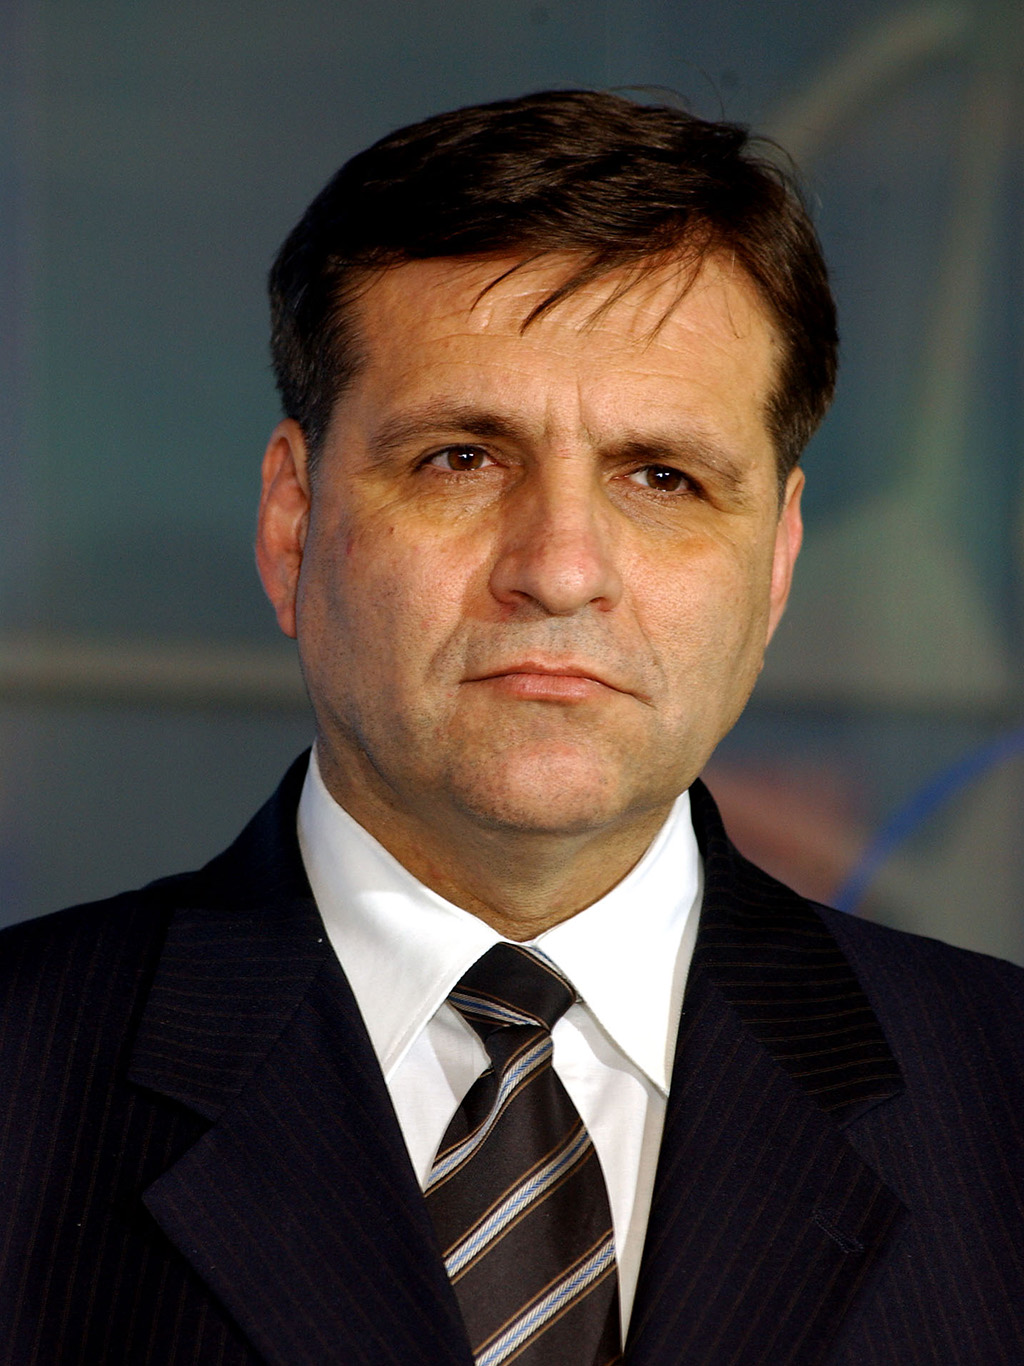 Boris Trajkovski se zasadil o vyhlášení makedonské nezávislosti